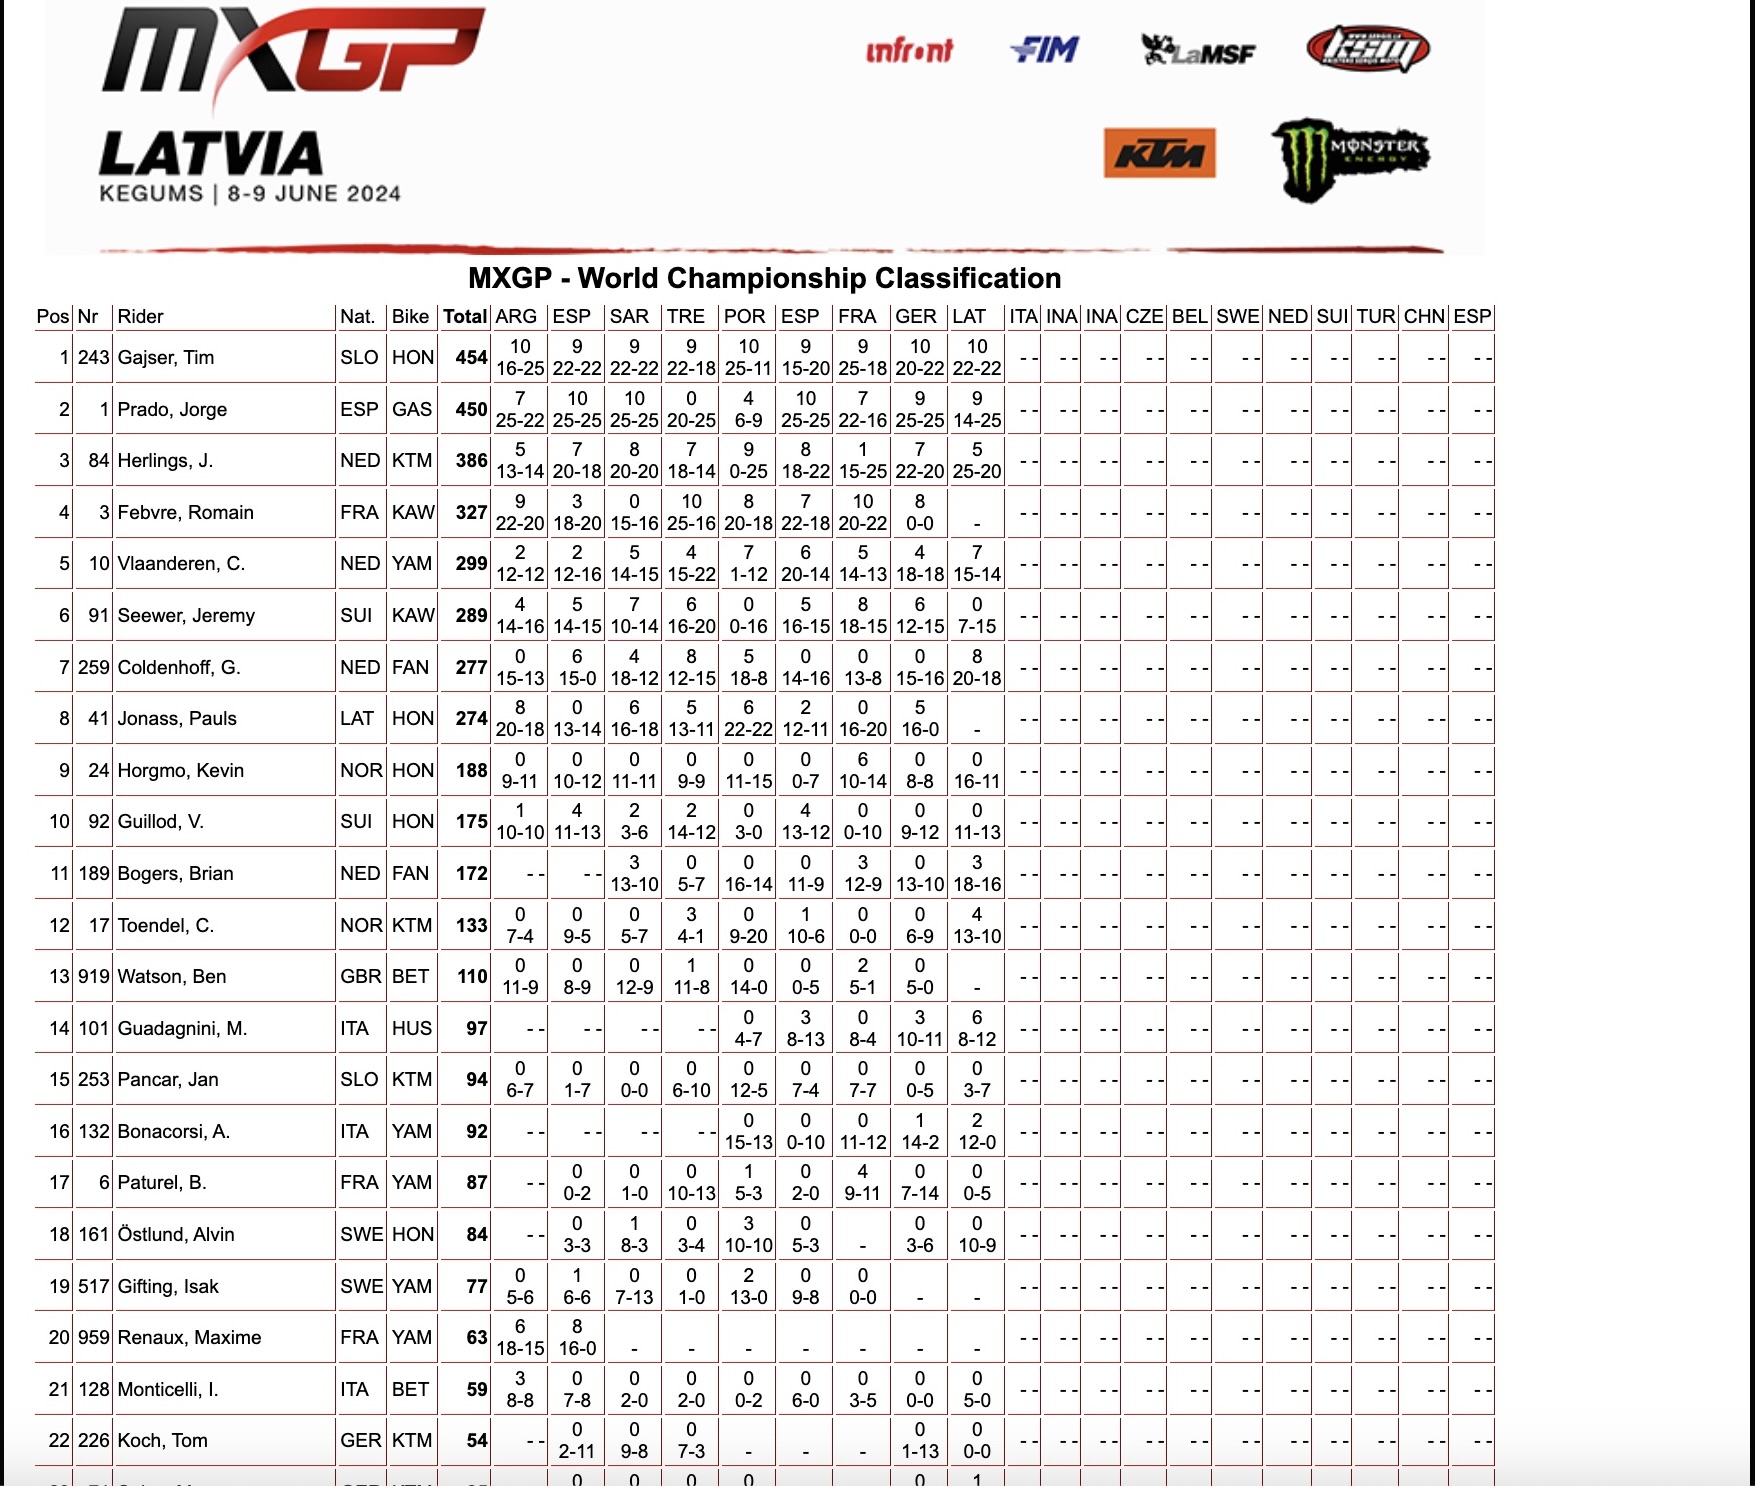 classifica generale MXGP - round 9 Lettonia